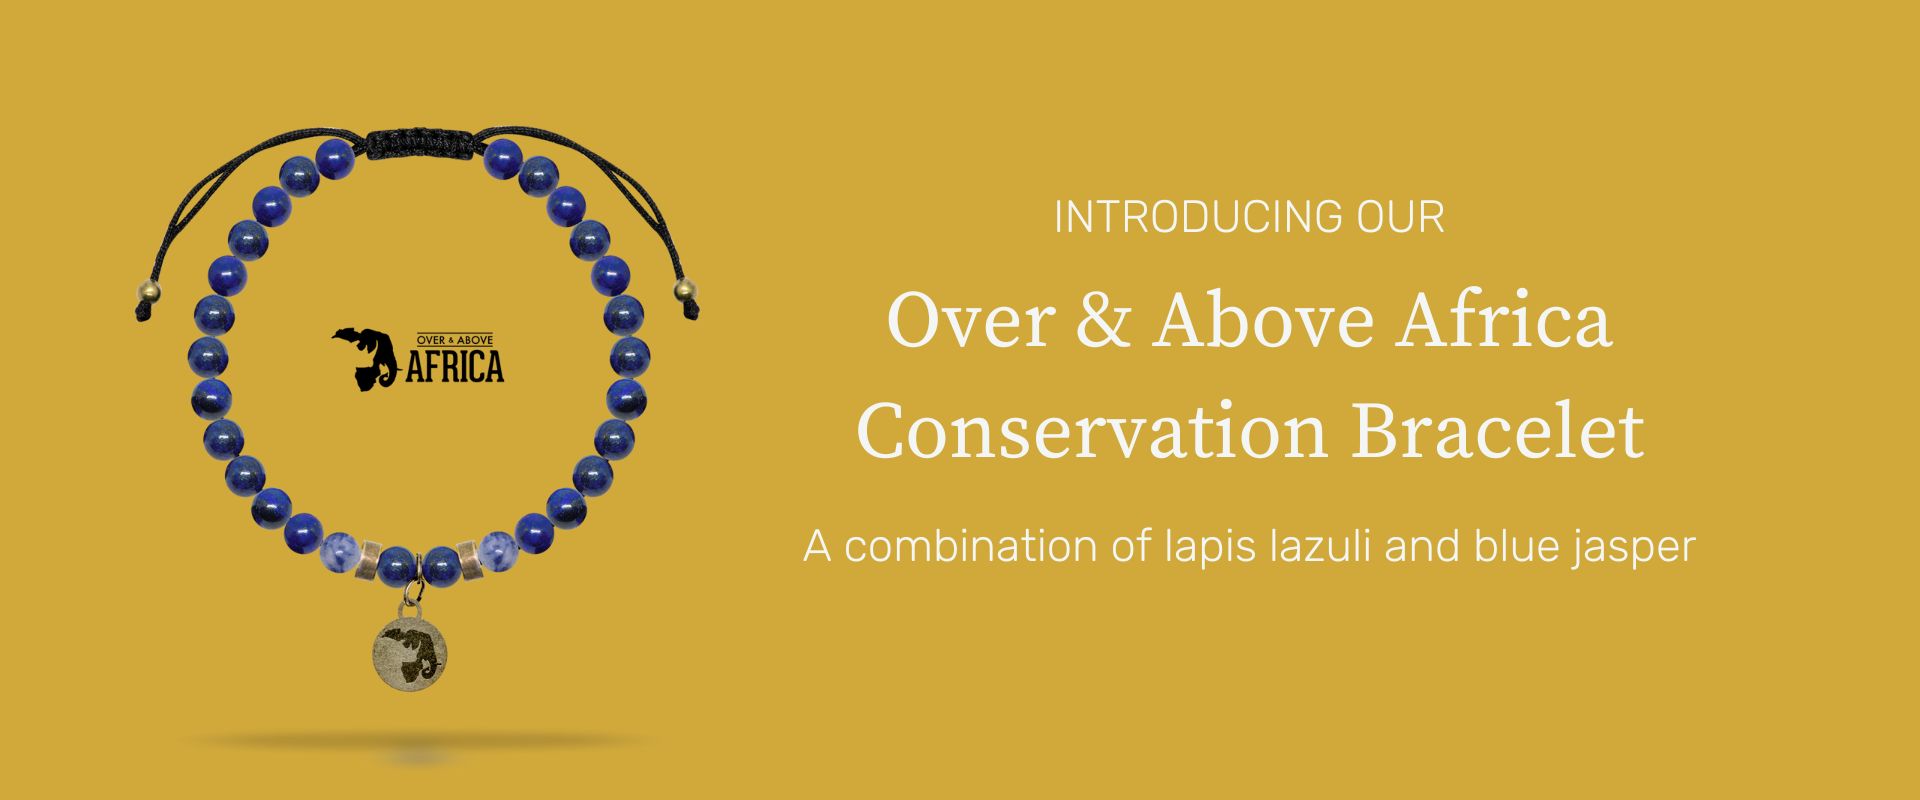 Over & Above Africa Conservation Bracelet